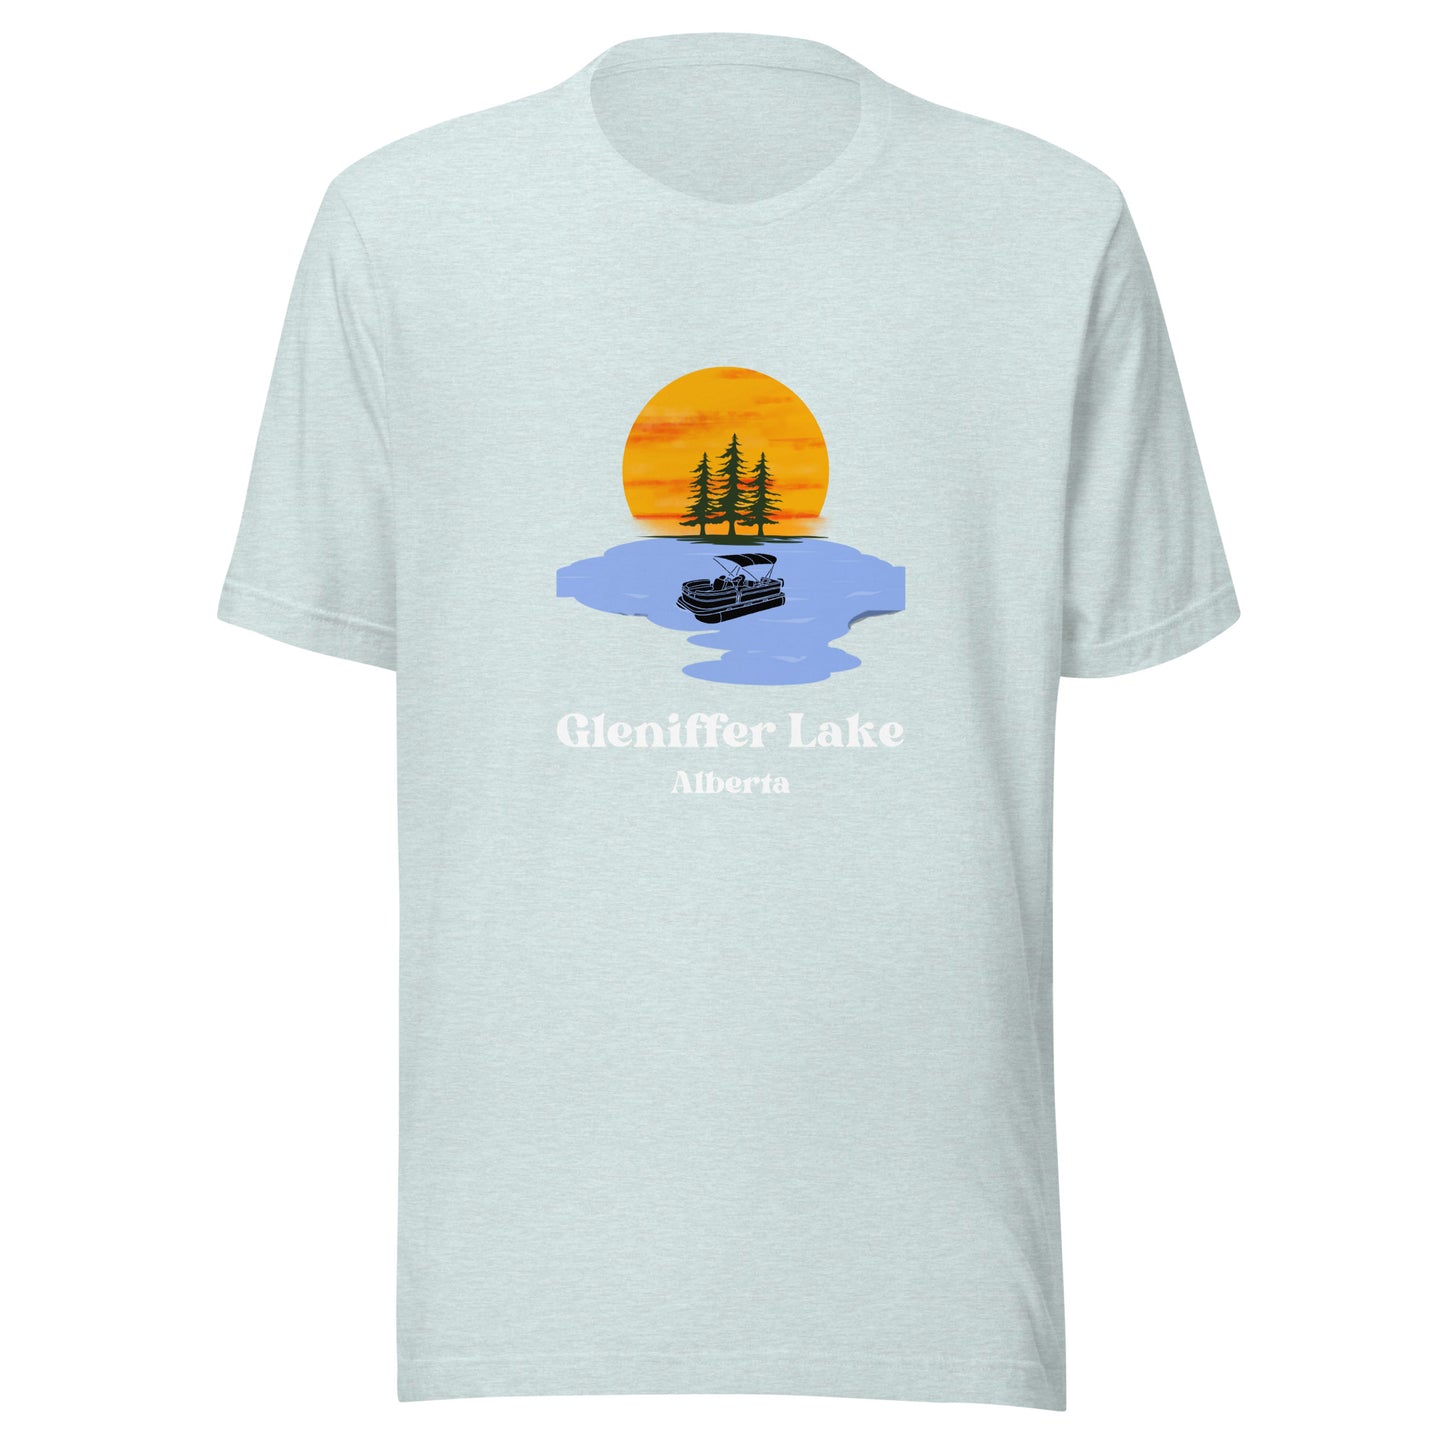 Gleniffer Lake, AB - Men's T-Shirt Pontoon